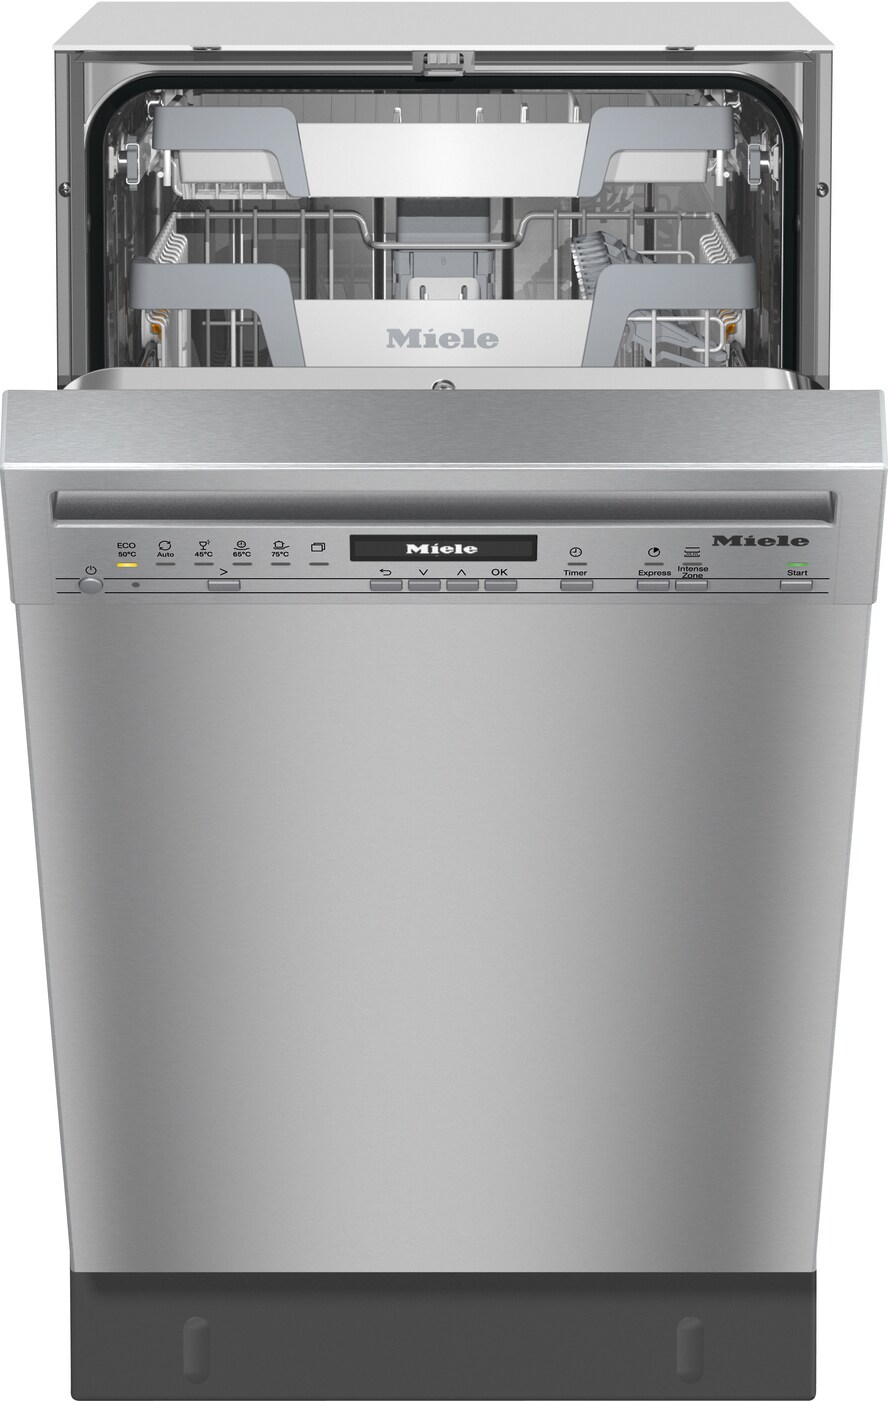 Køb Miele Opvaskemaskine online til meget lav pris!